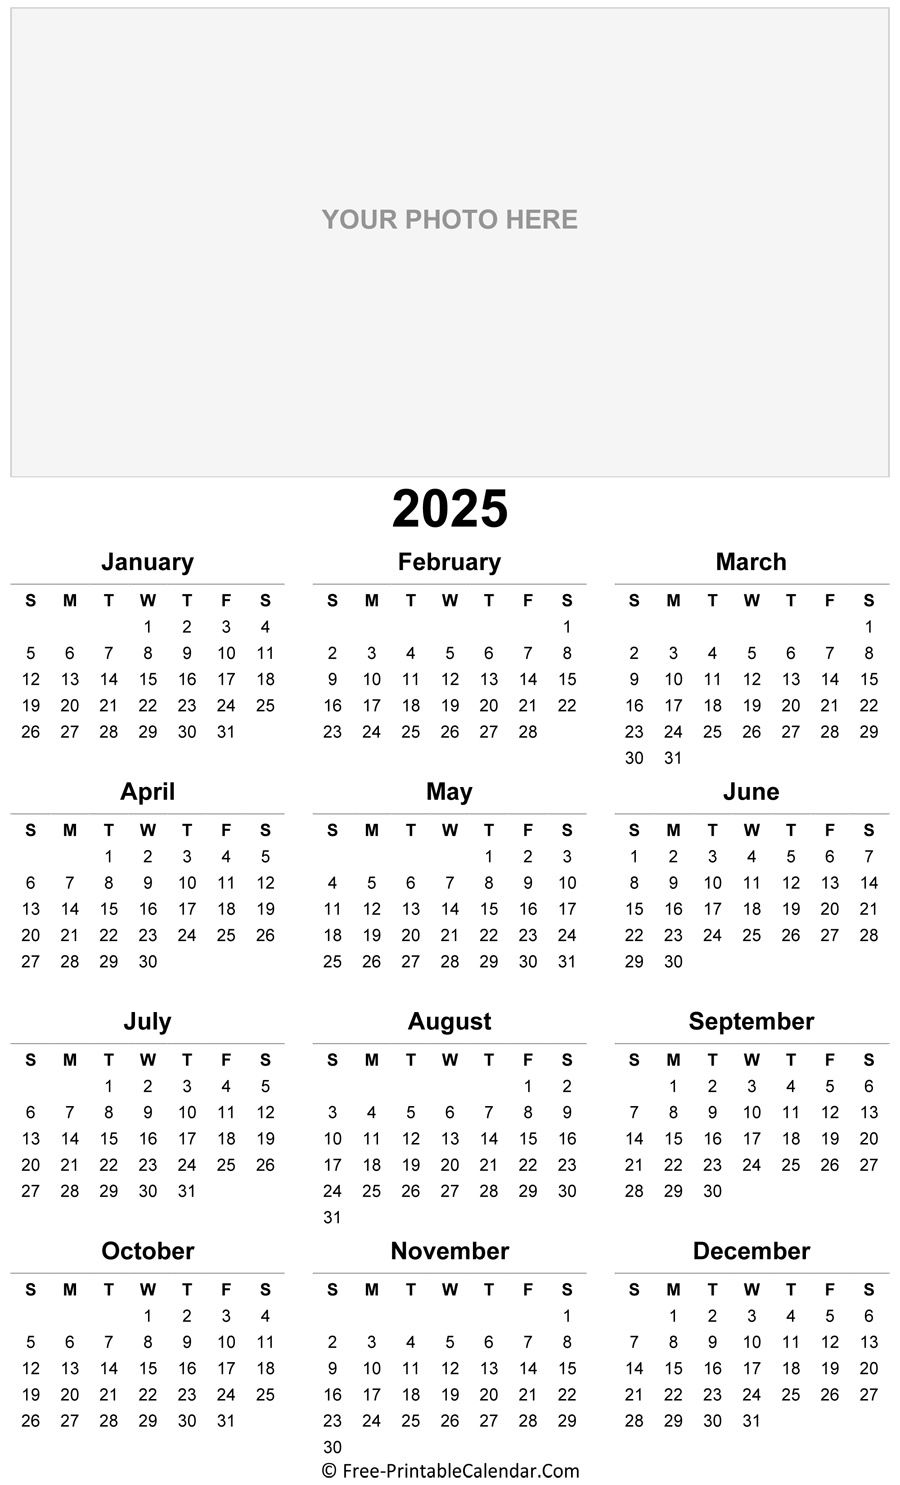 2025 Photo Calendar Templates